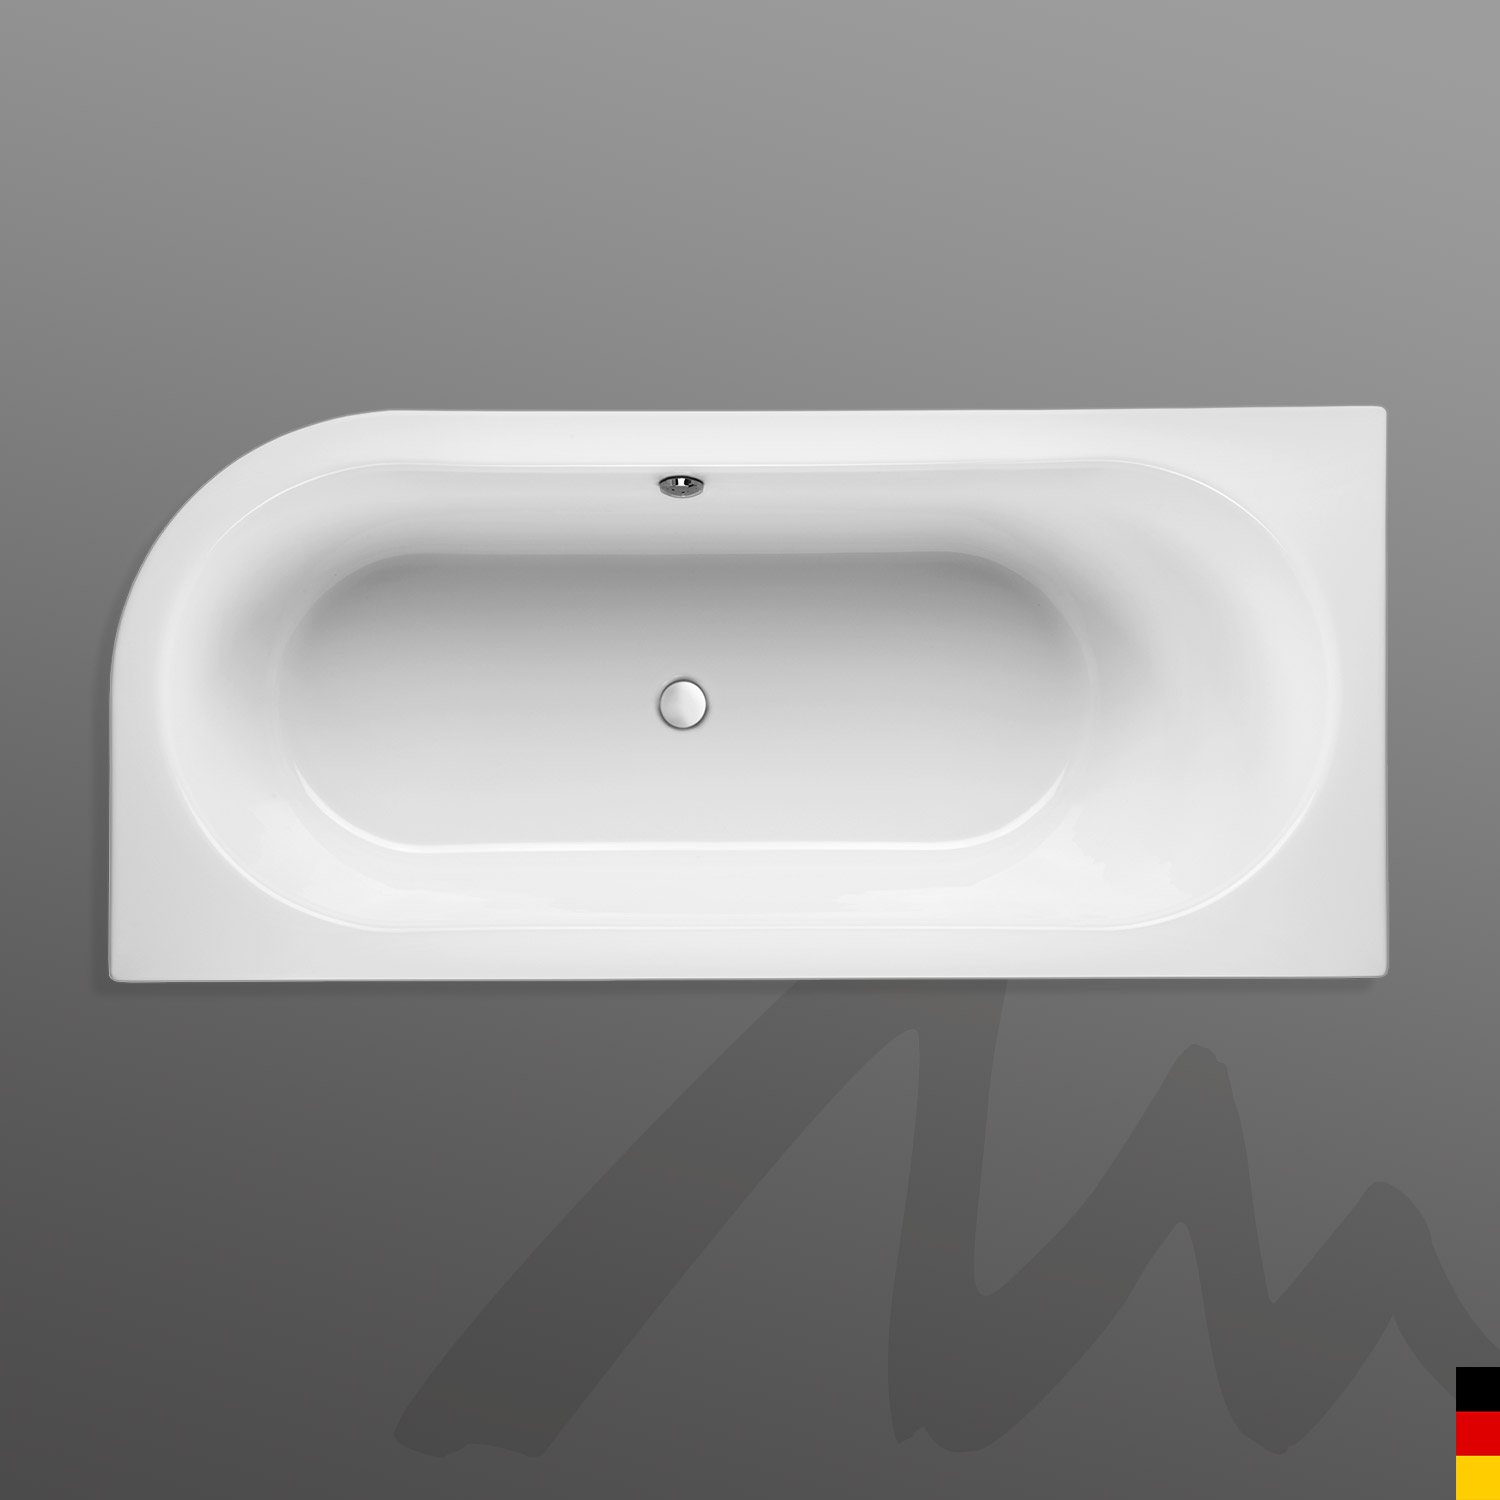 Mauersberger Badewanne Oval Primo 1 - 180/80 uno Ausführung rechts mit Acryl-Schürze/Panel  180x80x45  Farbe:weiß